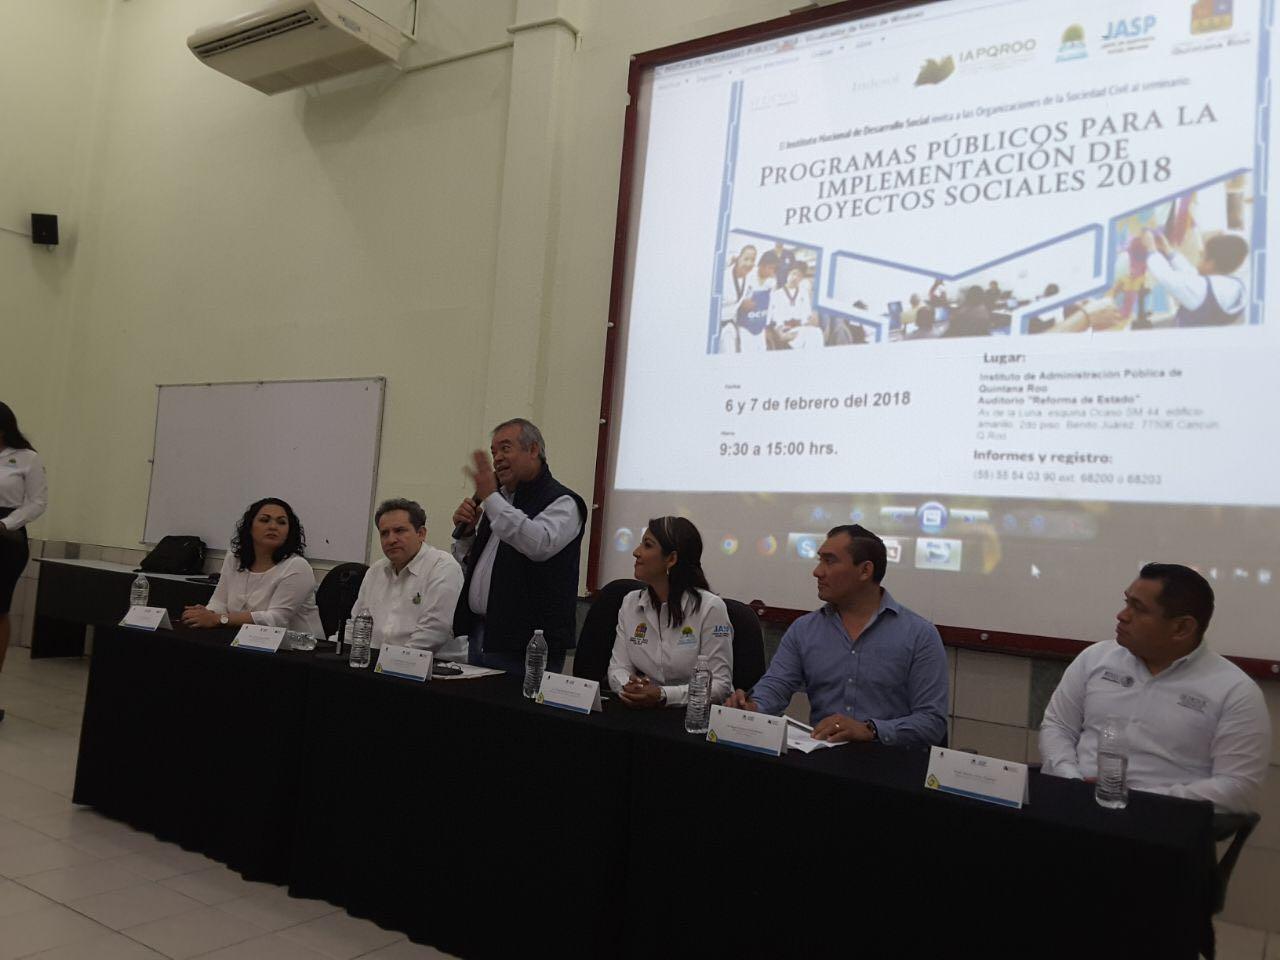 El martes 6 y miércoles 7 de febrero 2018, la Junta de Asistencia Social Privada del estado de Quintana Roo en coordinación con el Instituto Nacional de Desarrollo Social, llevó a cabo el “Seminario de programas públicos para la implementación de proyectos sociales 2018”.